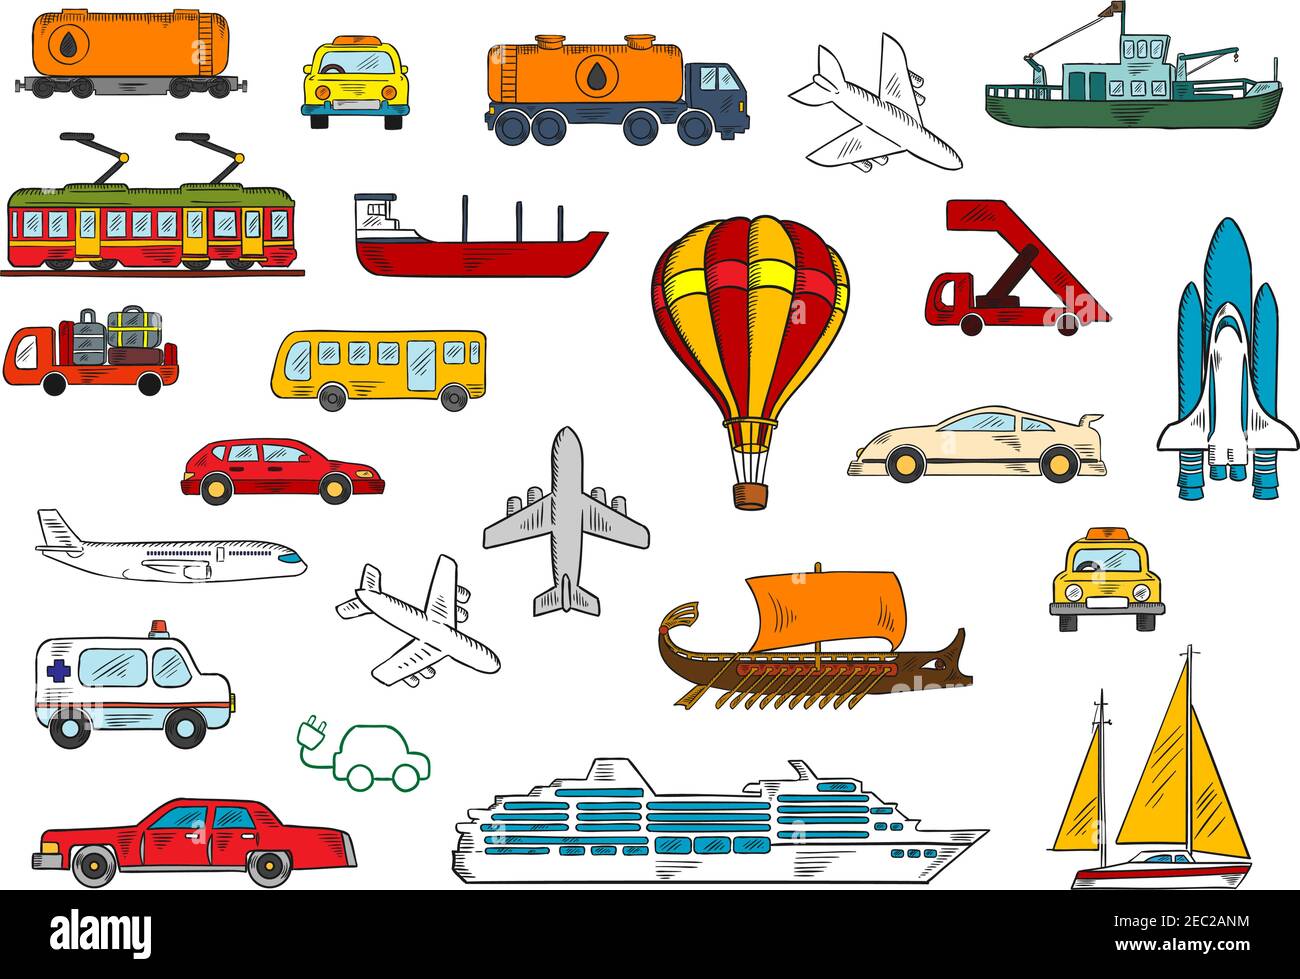 Croquis colorés de divers modes de transport avec voitures et taxi, avions, ambulance, bus, bateau de pêche et yacht, wagon-citerne et tanke Illustration de Vecteur